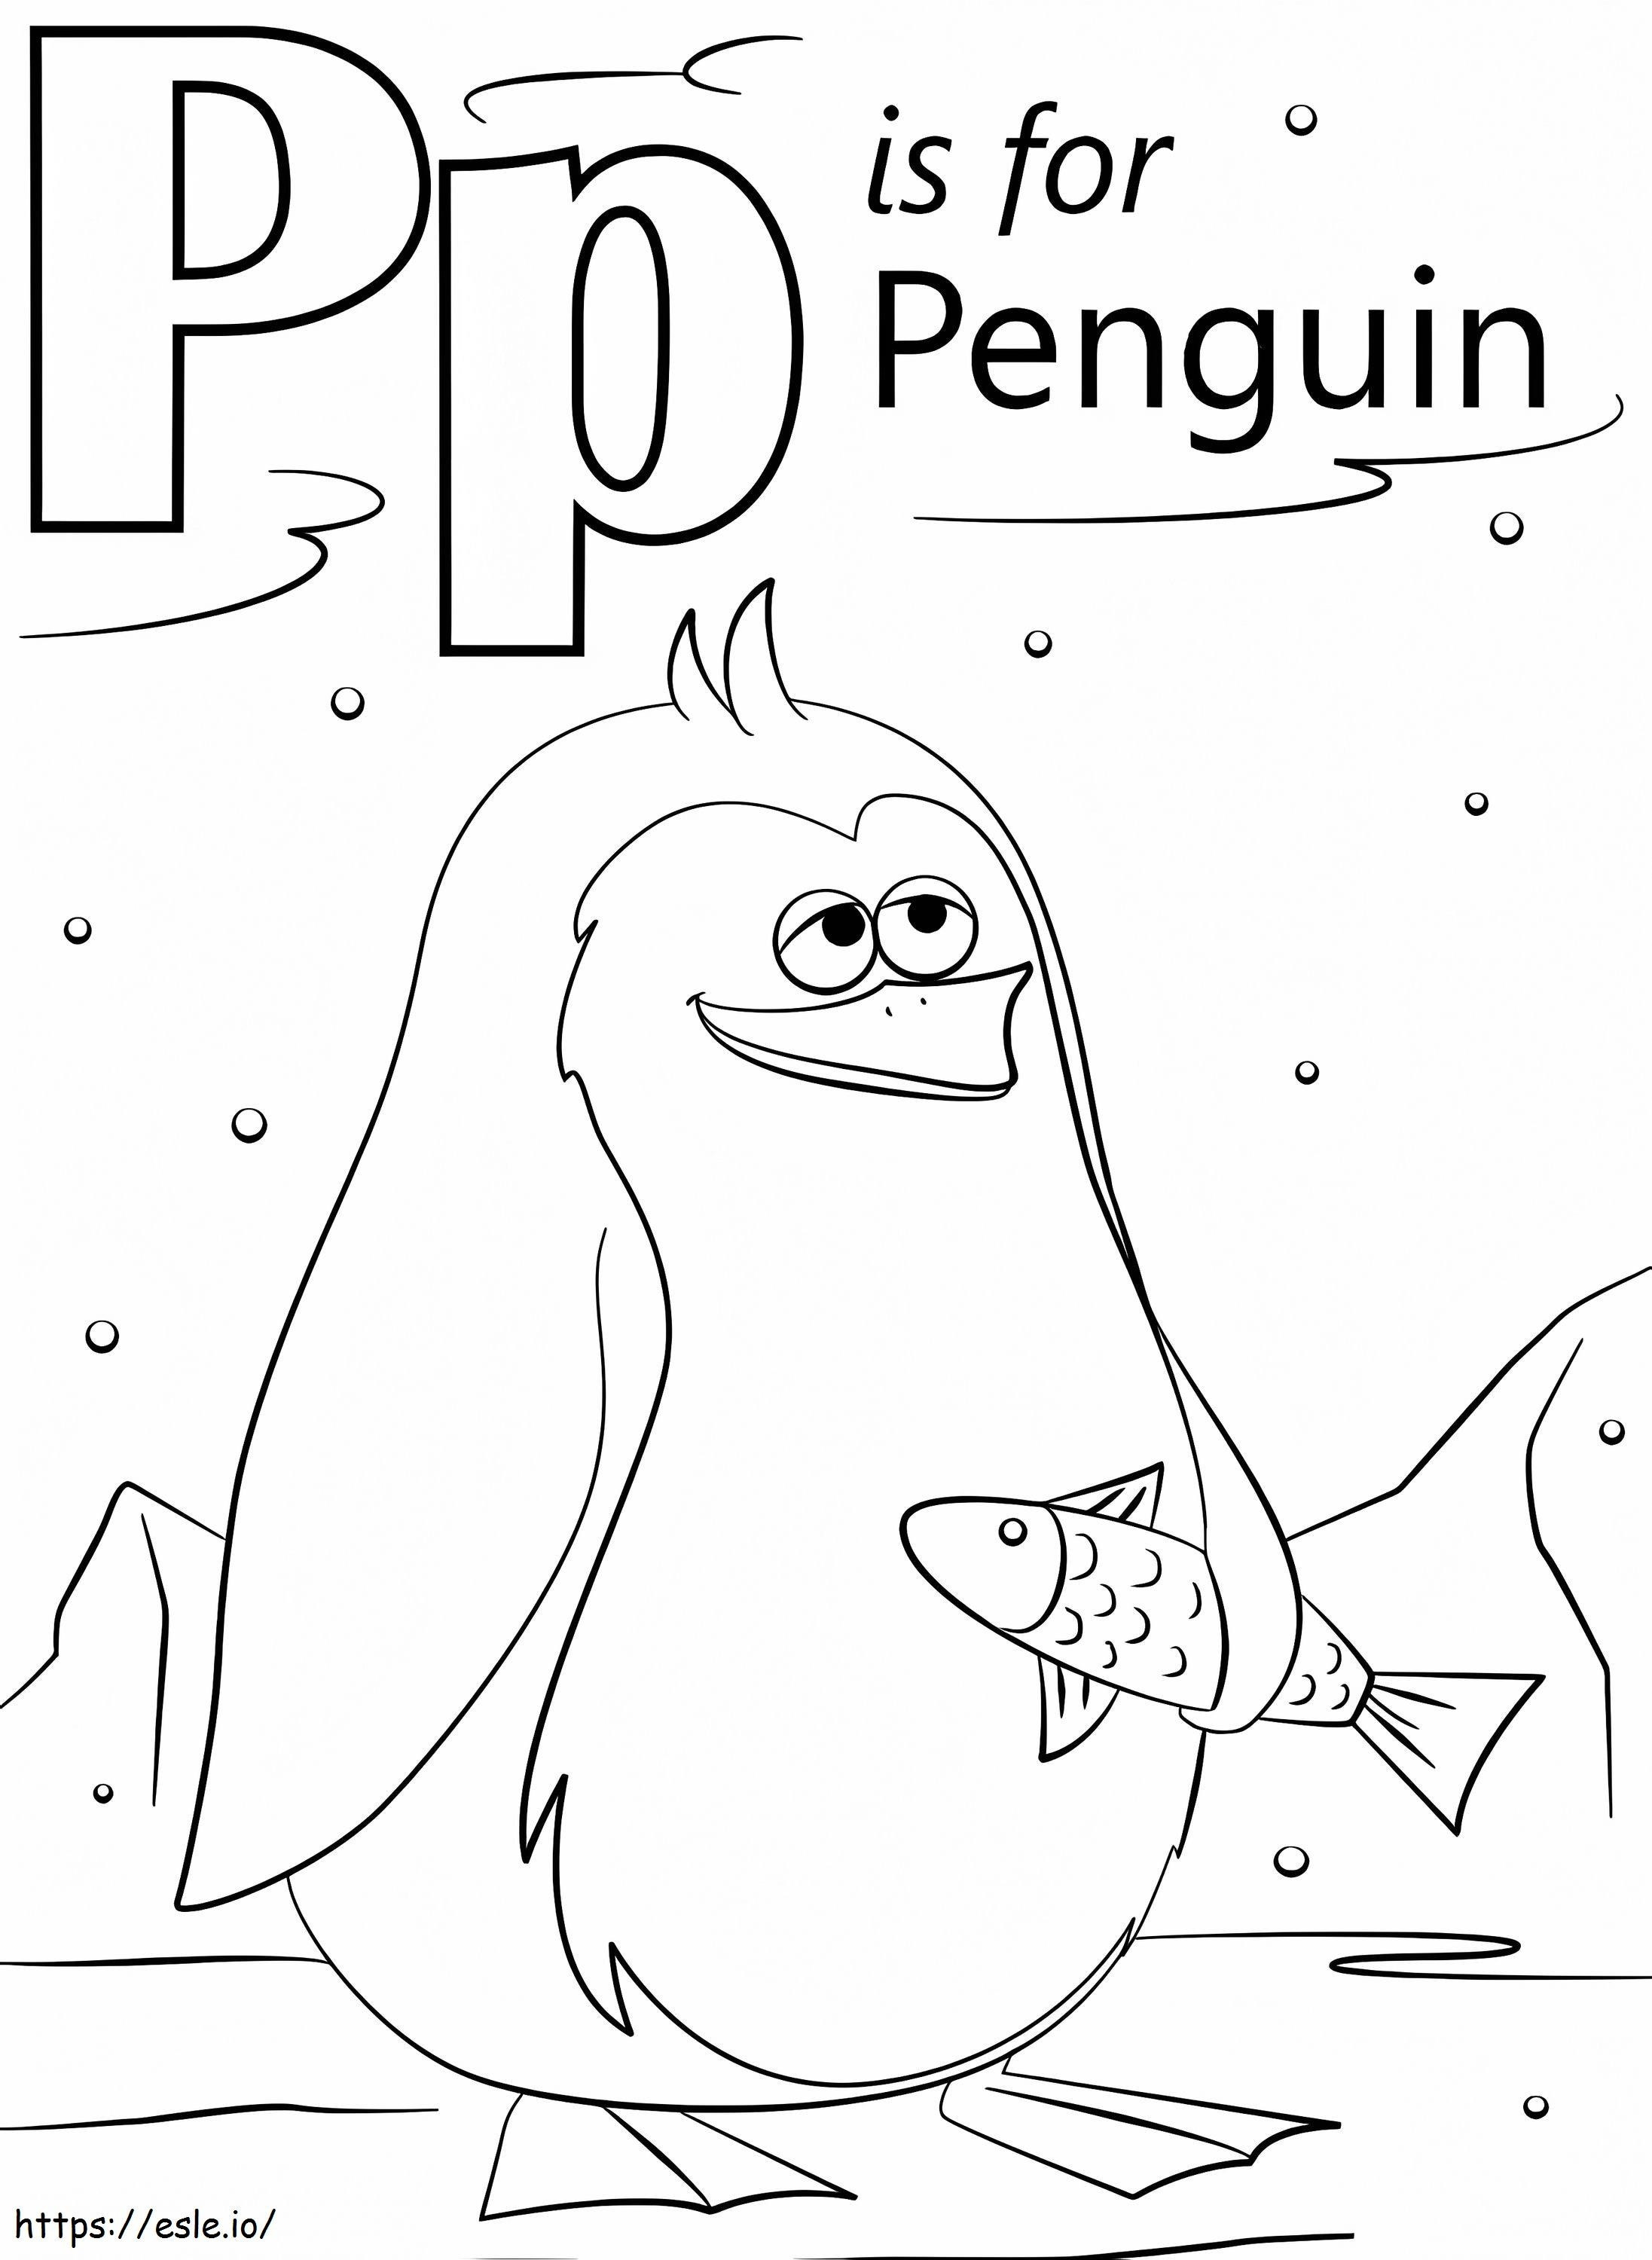 Lettera del pinguino P da colorare